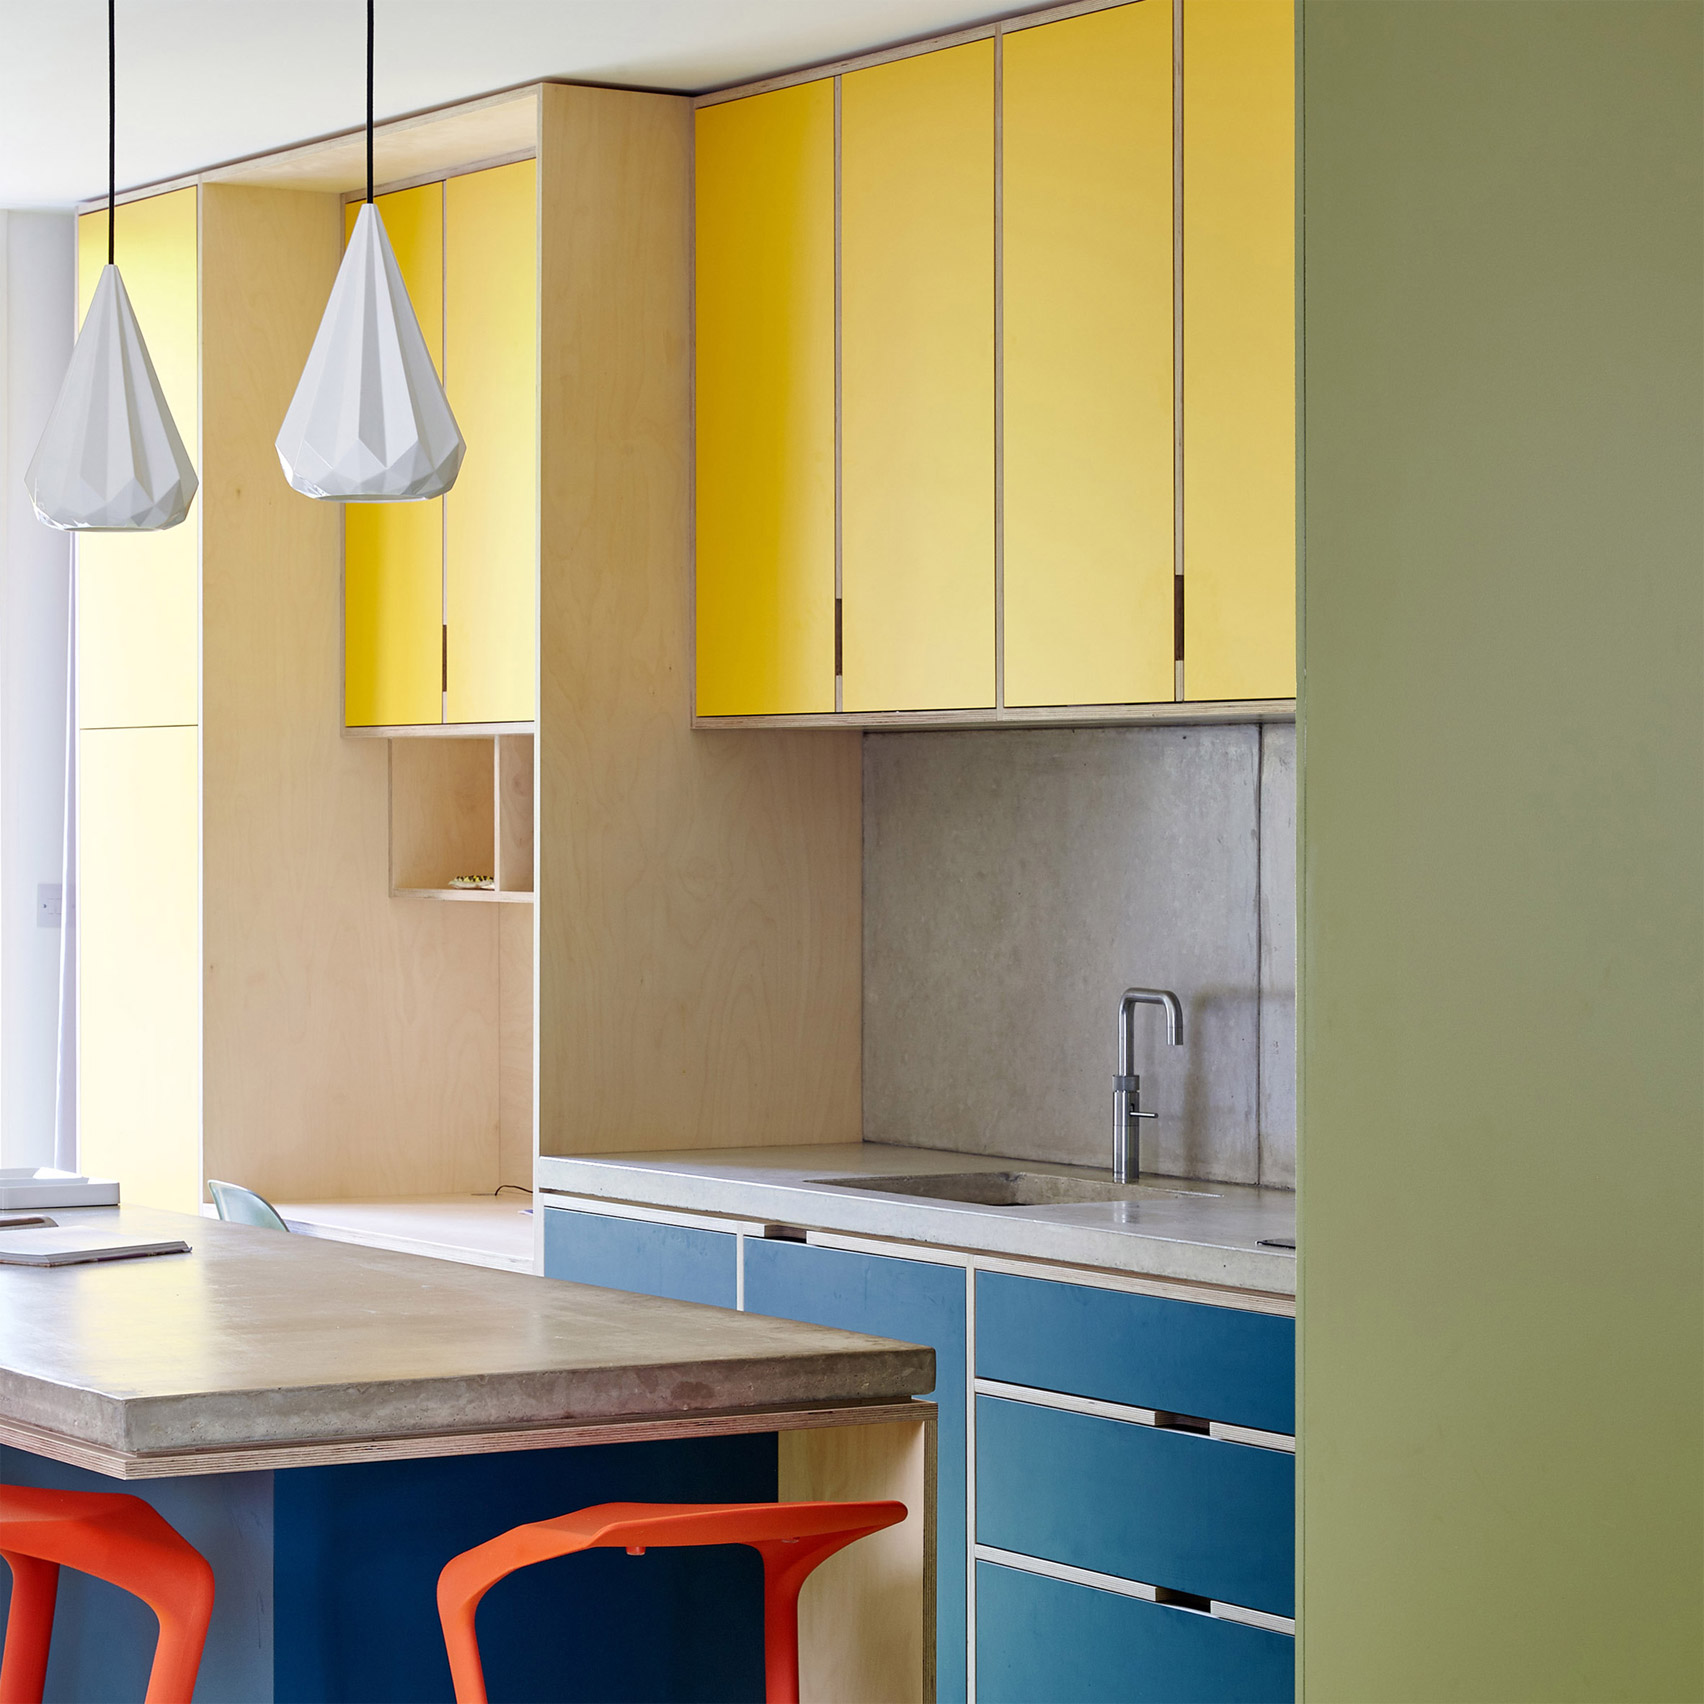 Không gian nấu nướng đa màu sắc của Kennington House do R2 Studio thiết kế, với sự xuất hiện của những gam màu trẻ trung như: Vàng, xanh lam, cam, xanh coban, xanh rêu nhạt,... mang lại vô vàn cảm hứng cho gia chủ.